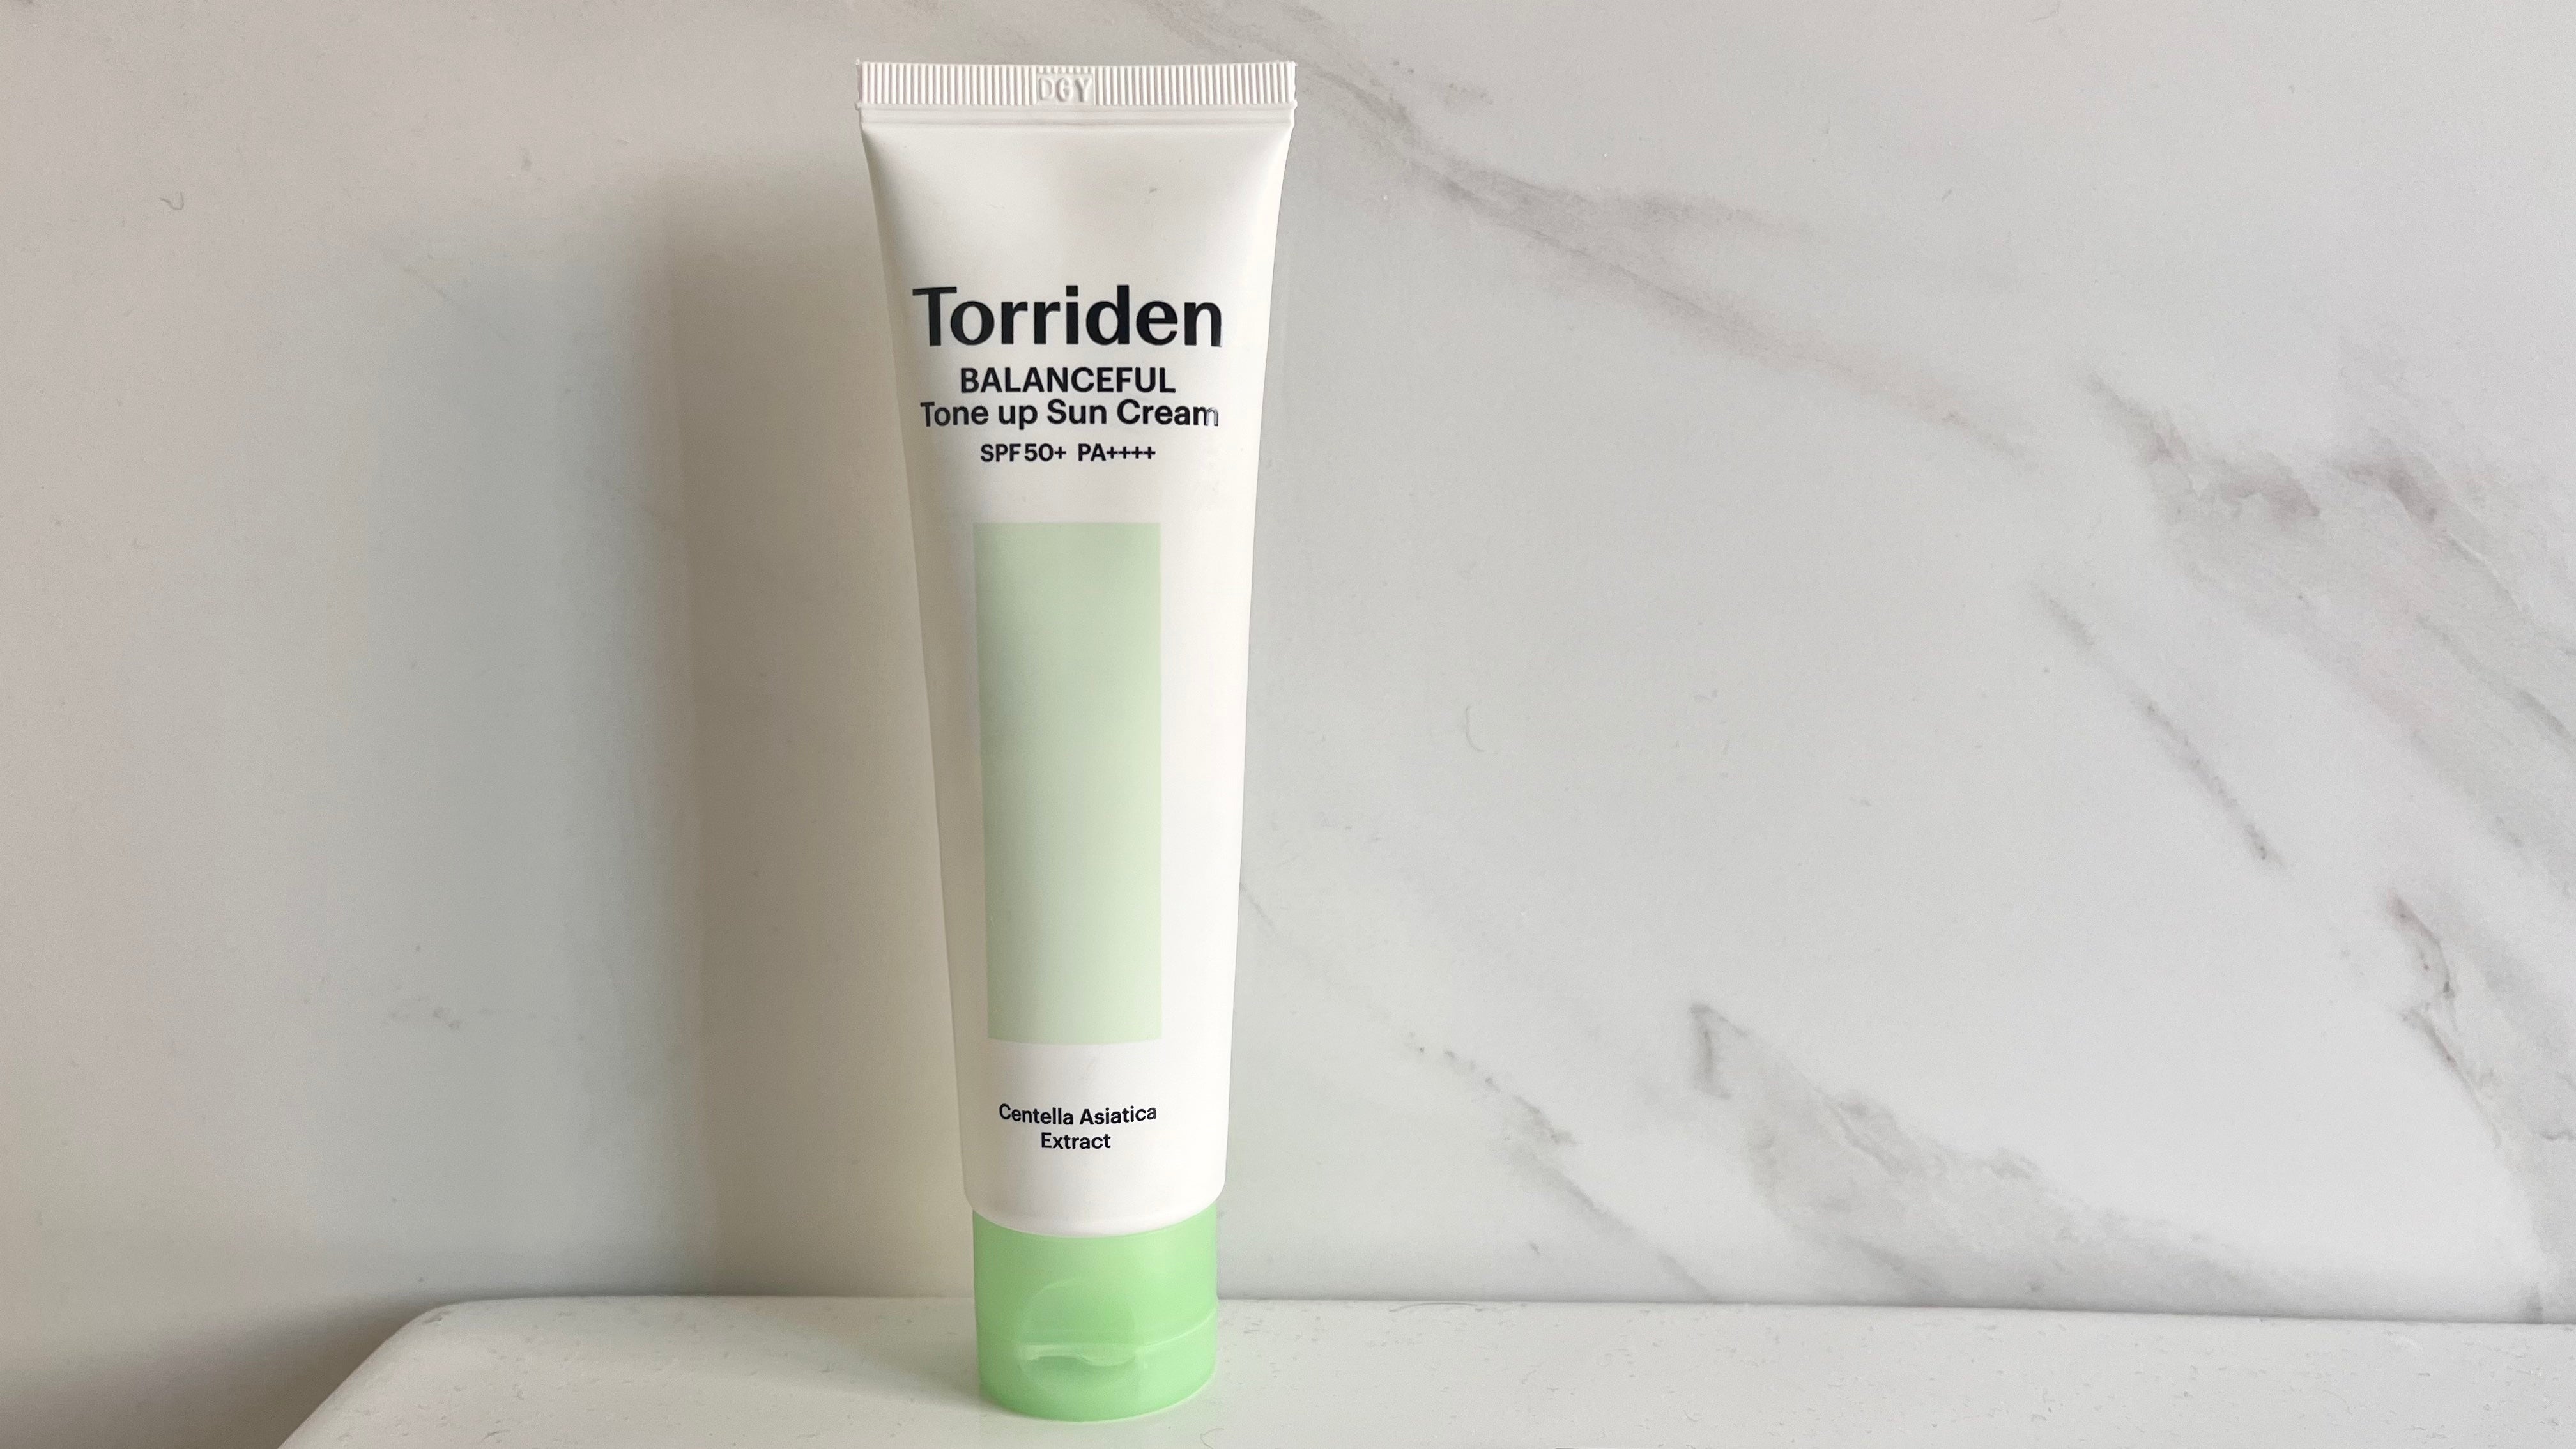 HI-REVIEW: Torriden Balanceful Cica Tone-up Sun Cream